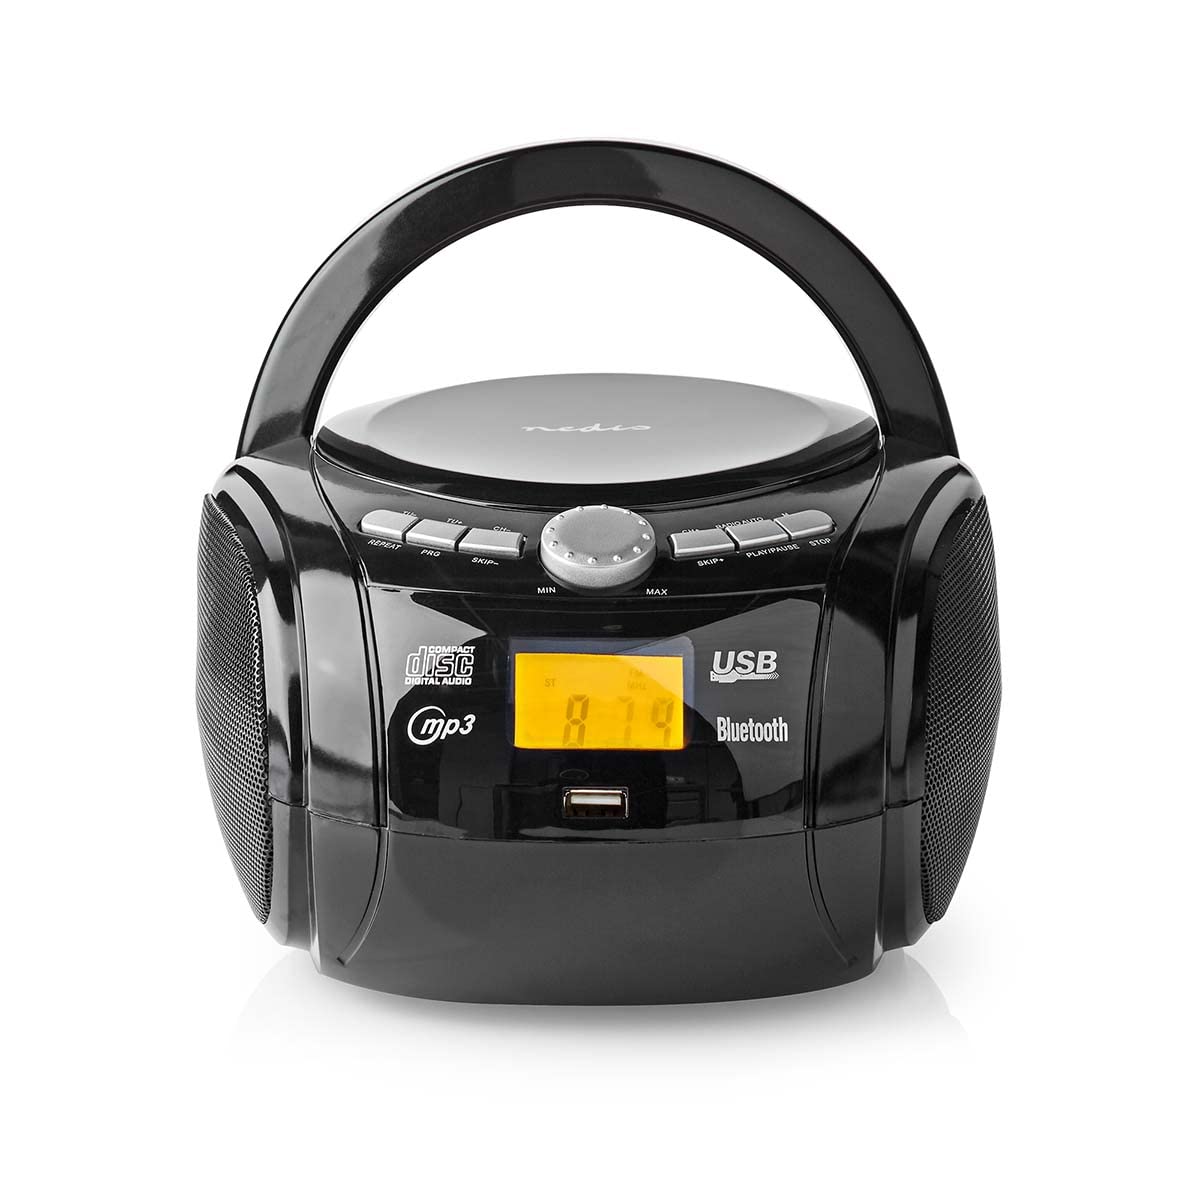 Nedis - Boombox - 9 W - Bluetooth® - CD-Player/UKW-Radio/USB/AUX - Griff - Extraleicht - Eingebauten Stereolautsprecher - Radio - Anzeige - USB-Wiedergabe - Schwarz